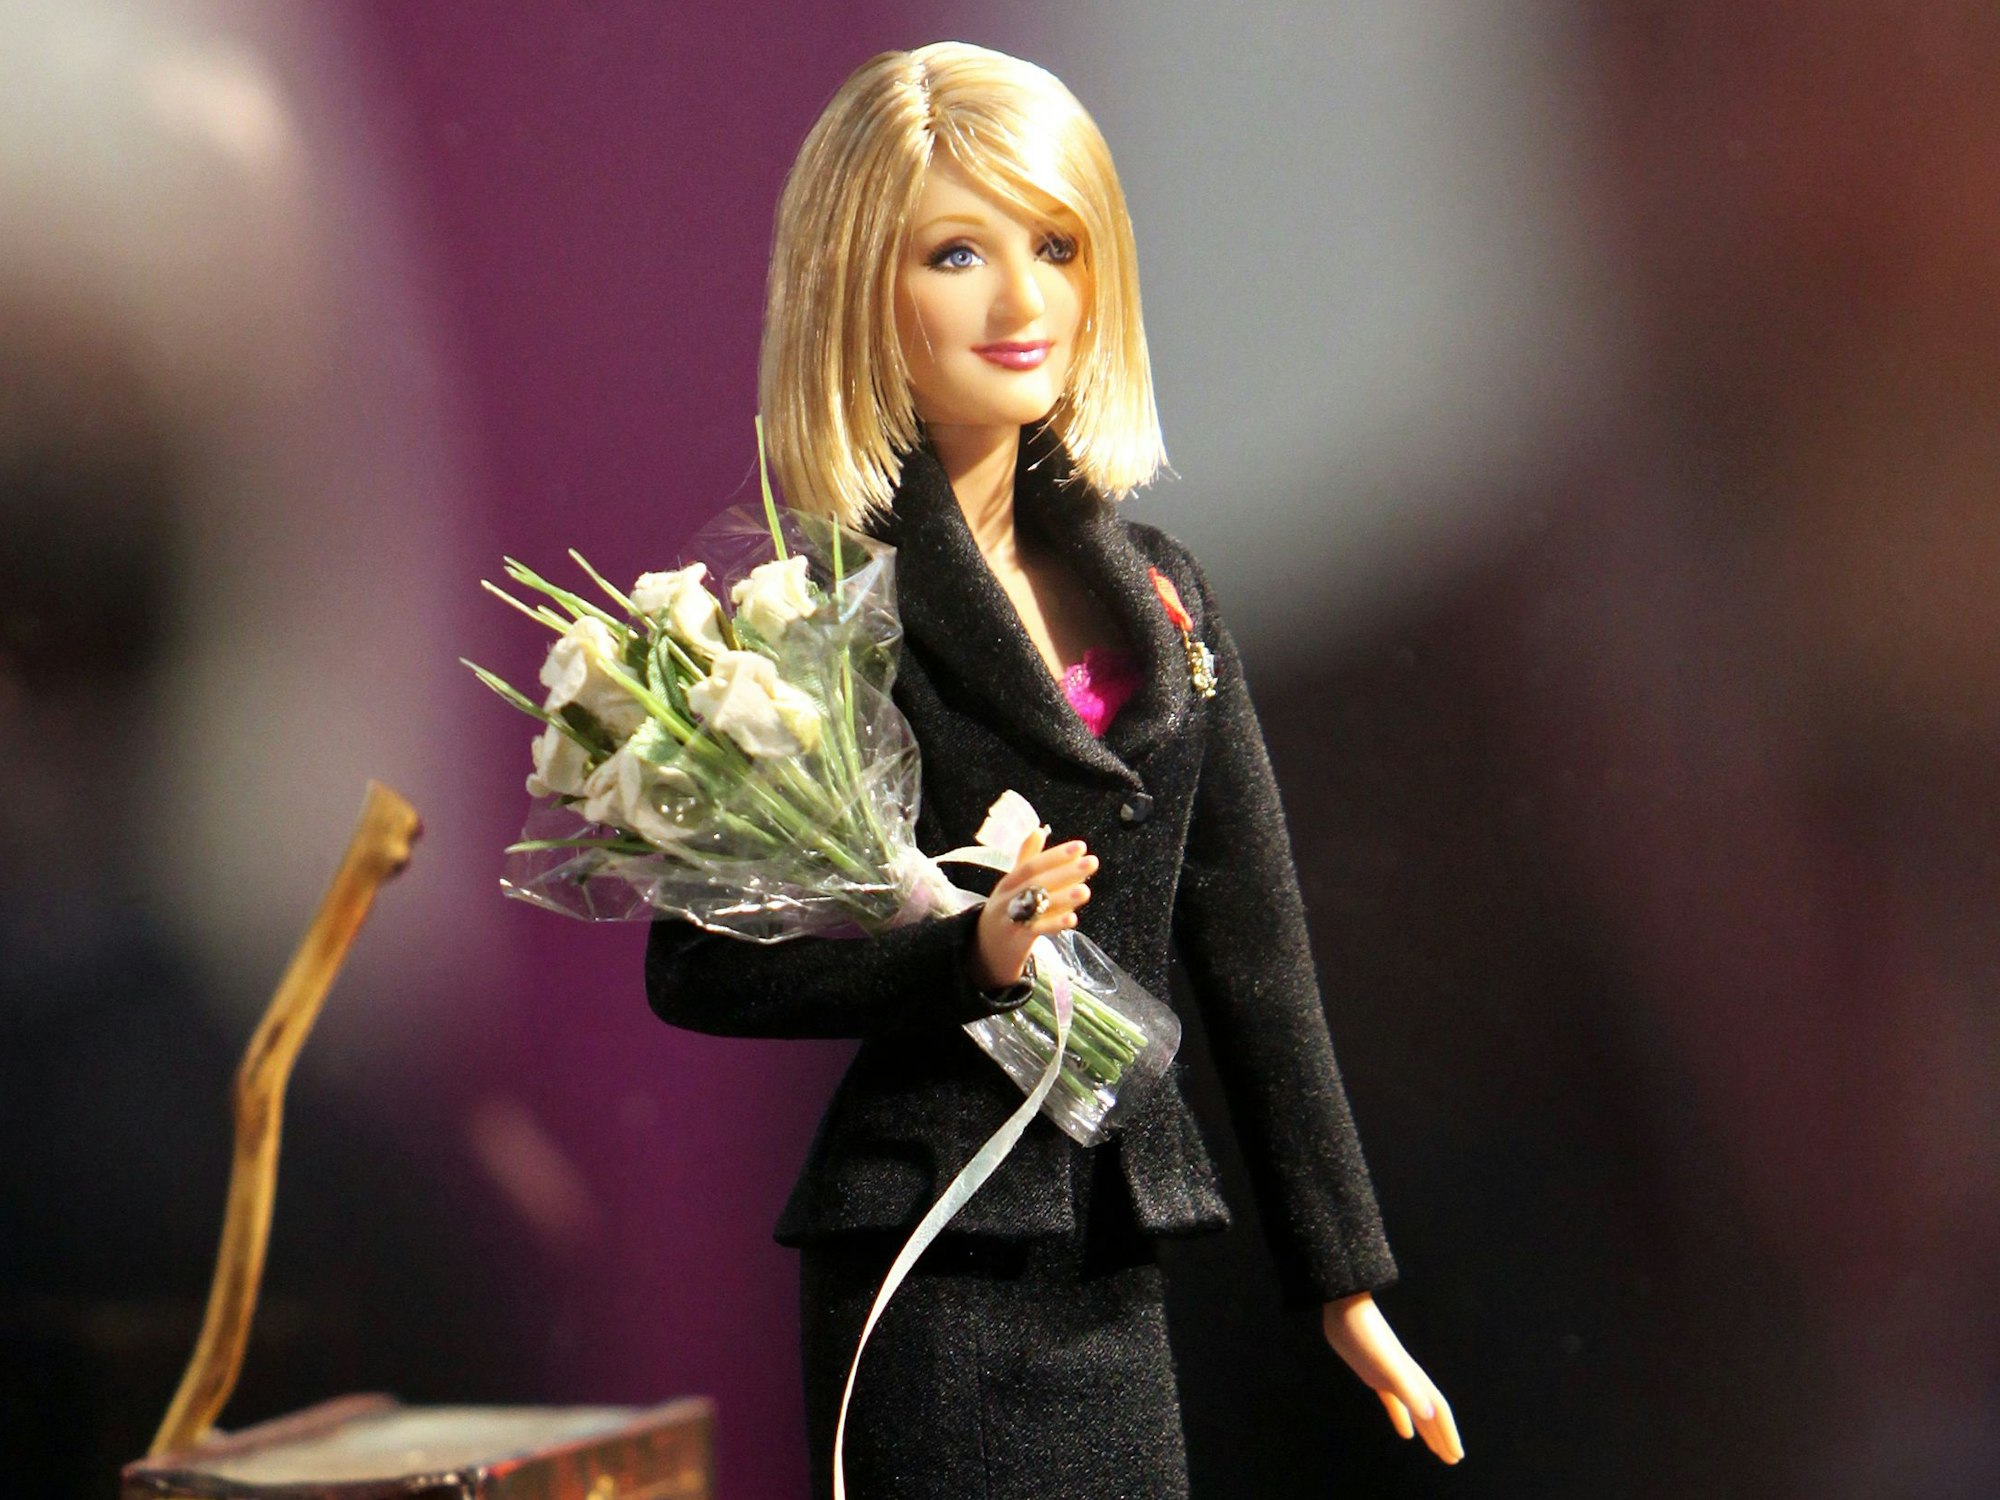 Harry Potter-Autorin Joanne K. Rowling als Barbie-Puppe, vorgestellt im Februar 2010 auf der Internationalen Spielwarenmesse in Nürnberg.